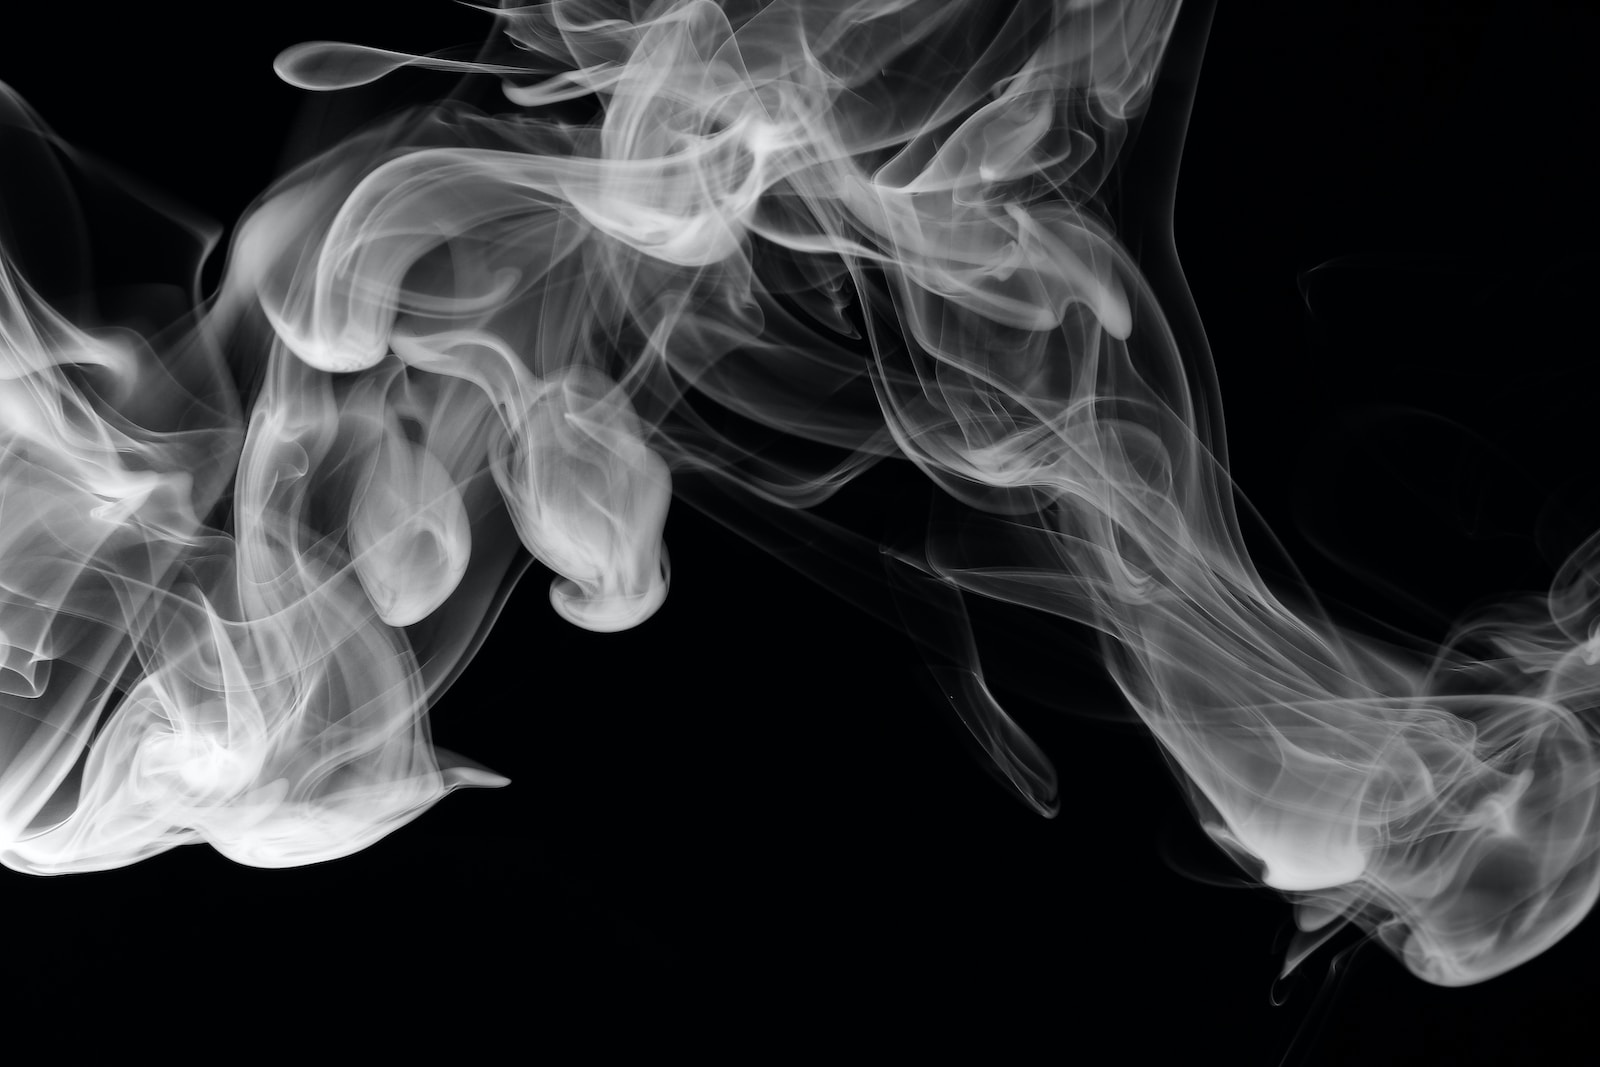 Dampfen, Rauchen, Religion – Wie passt das zusammen?